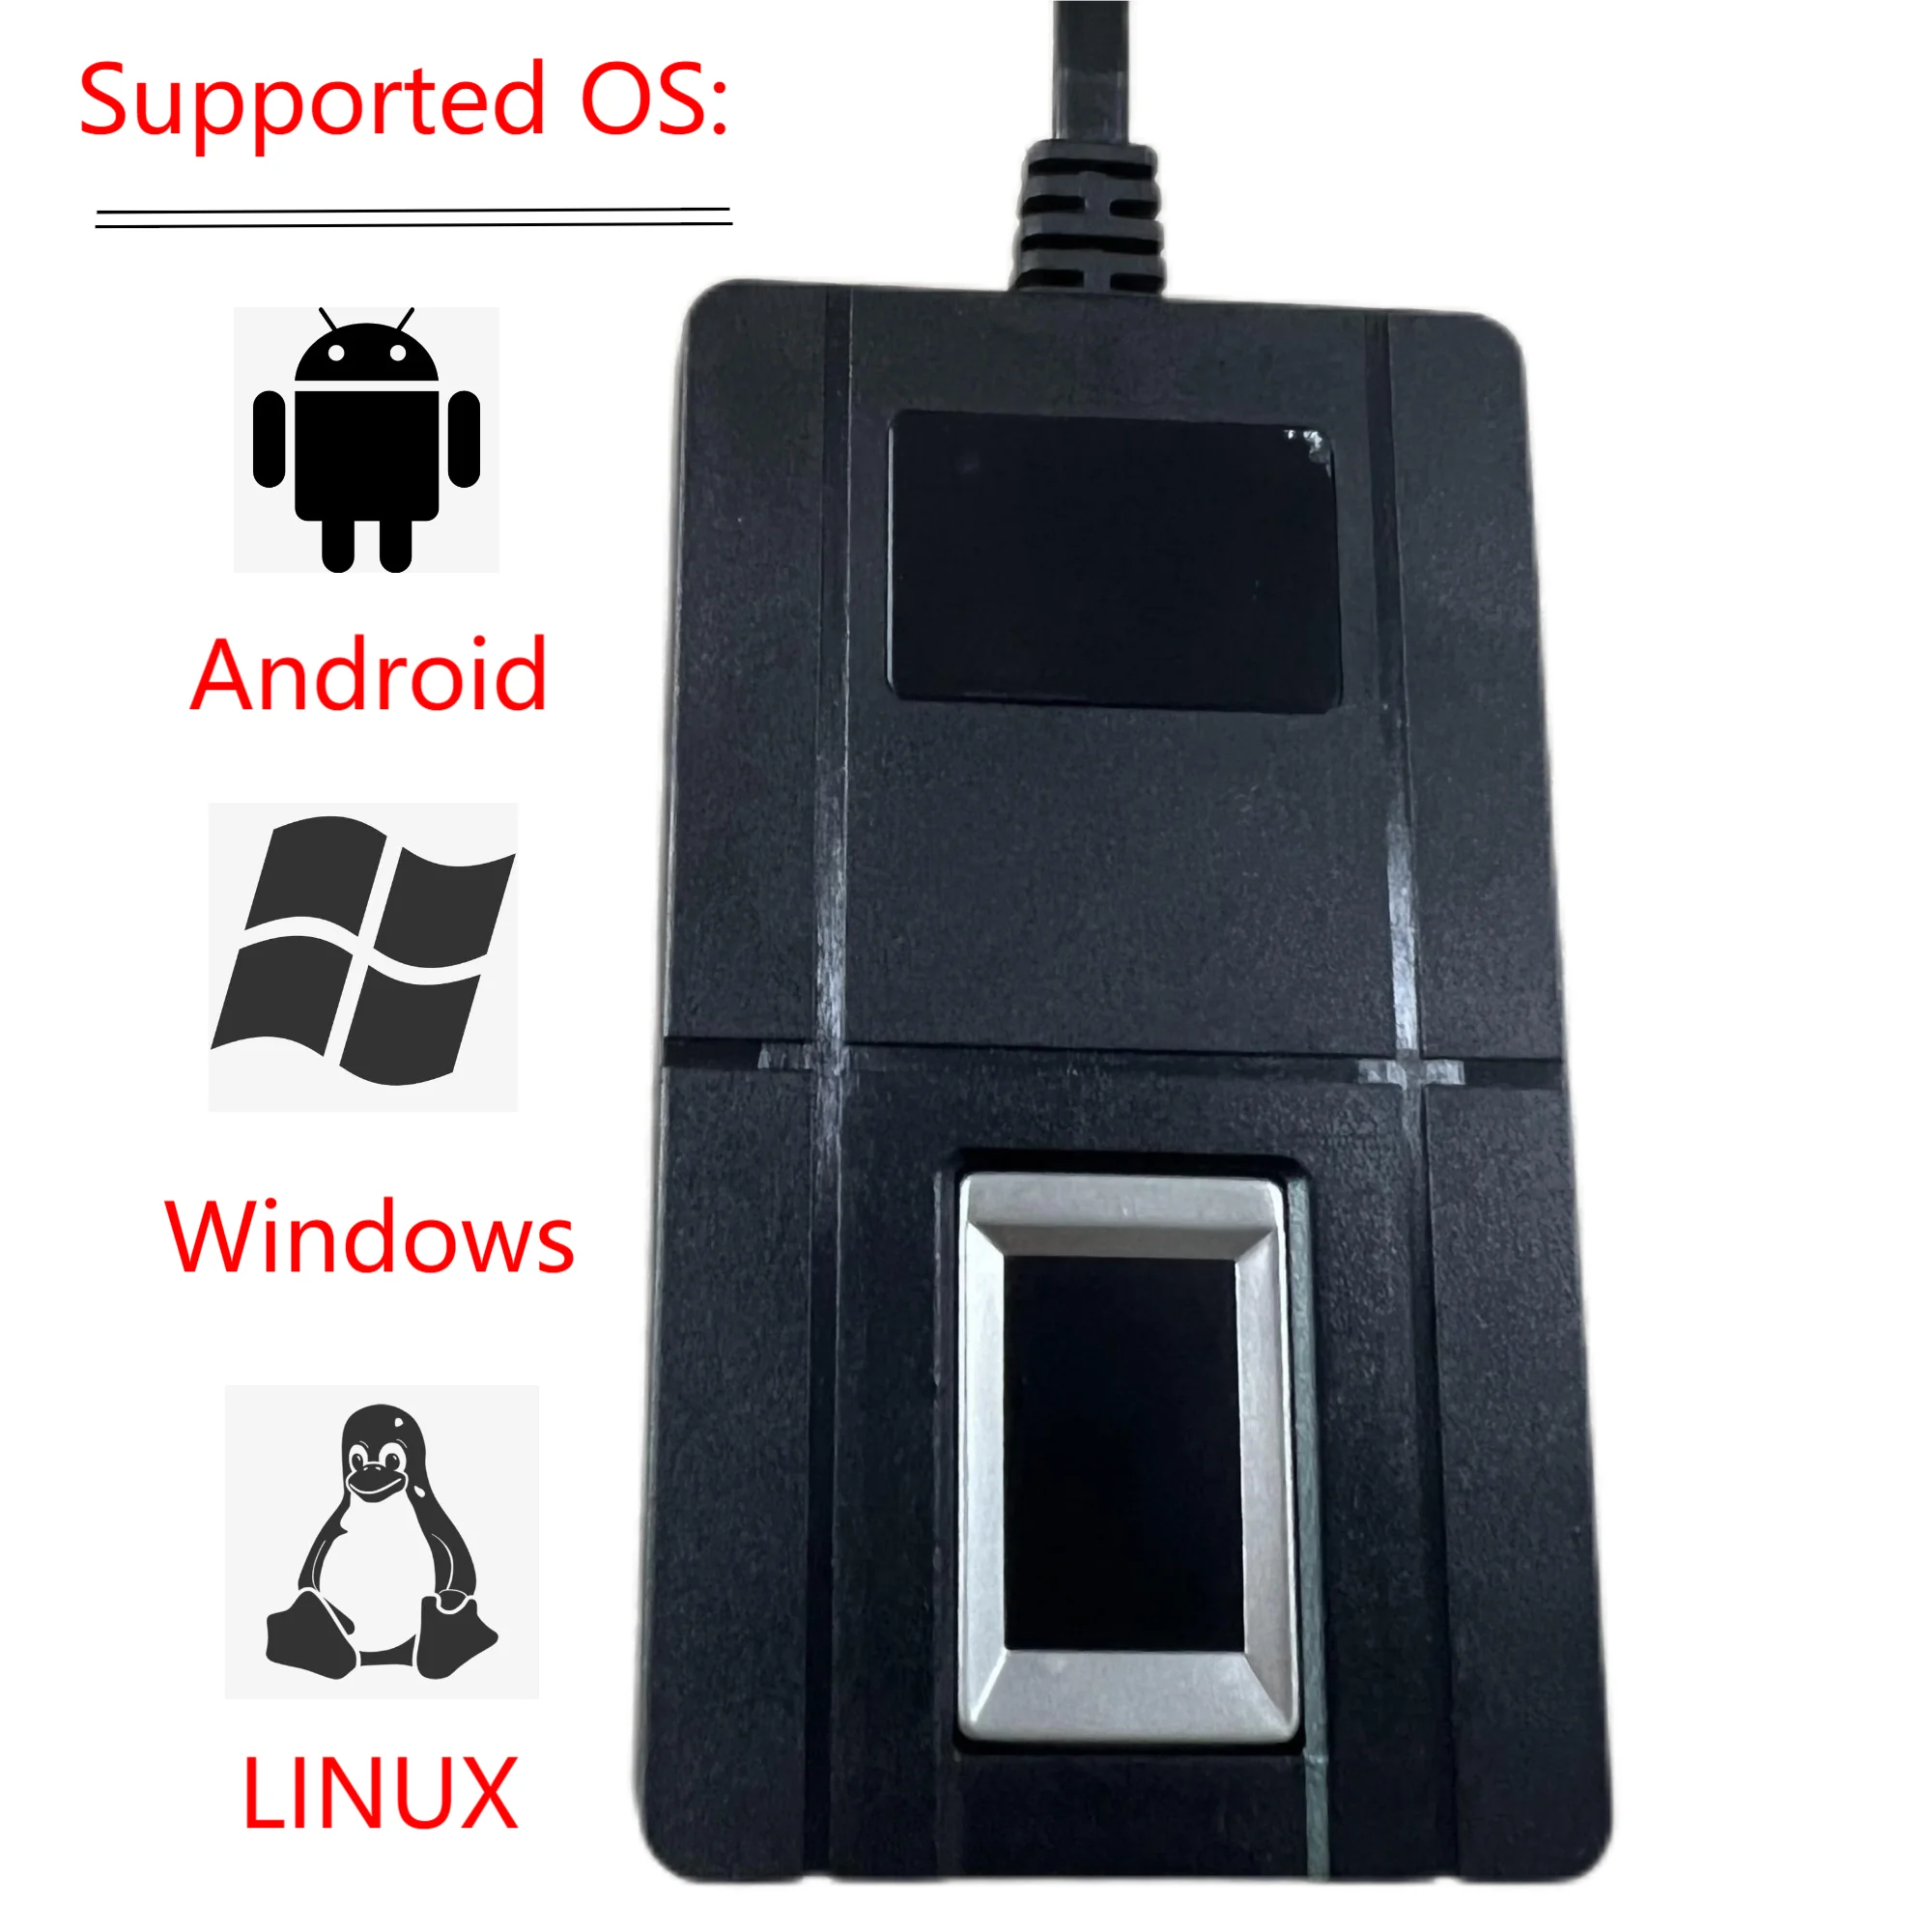 Windows Android Systému Linux s SDK Pre Vývoj, Biometrické Usb Fingerprint Reader USB Skener Odtlačkov prstov . ' - ' . 5